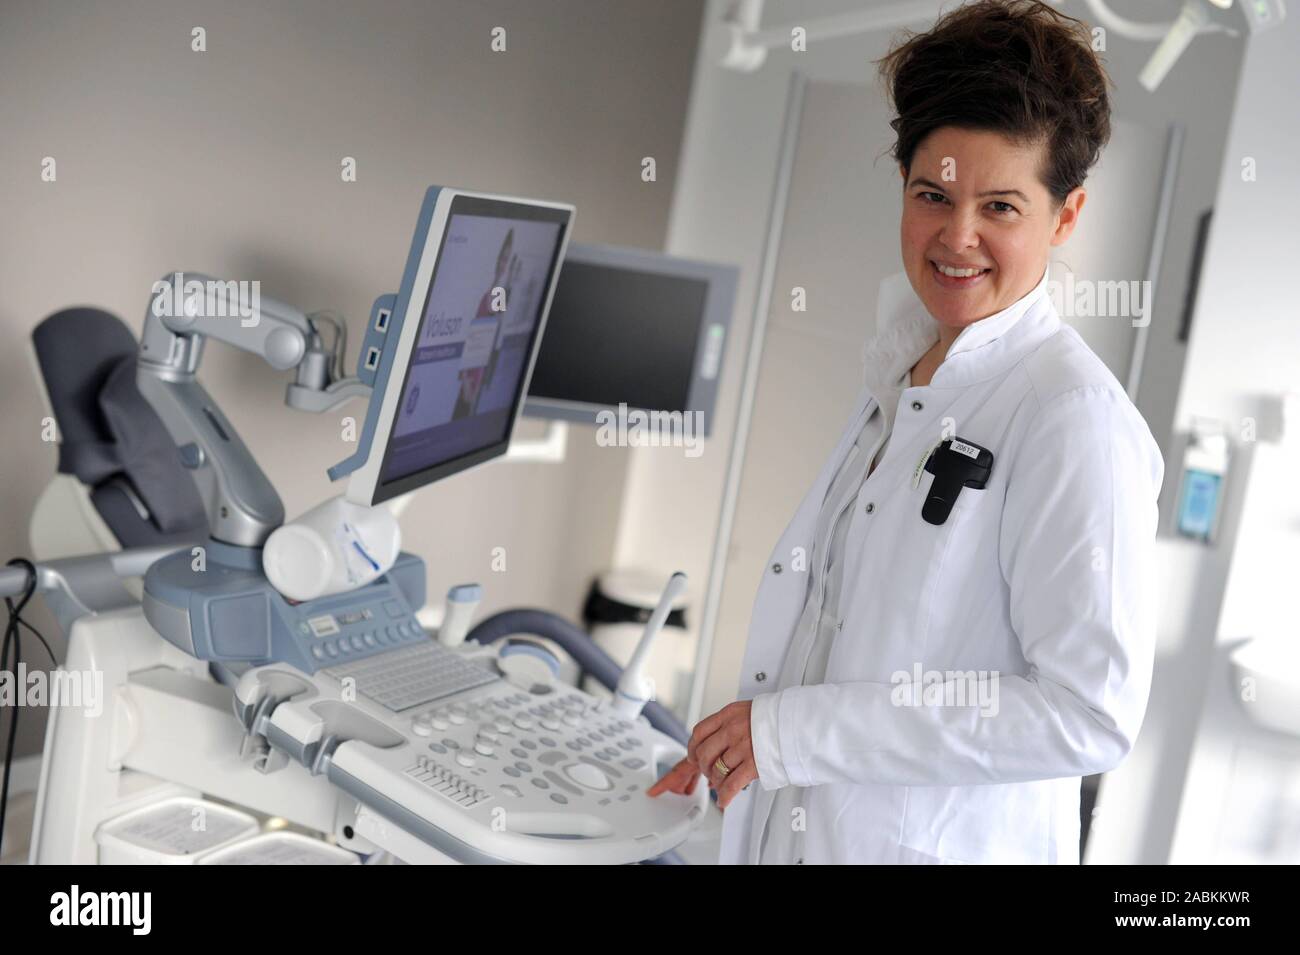 Dr. Sabine Keim, médecin chef de la clinique de gynécologie et d'obstétrique à l'Helios Klinikum München Pasing dans l'Ouest, à la Clinique de gynécologie. [Traduction automatique] Banque D'Images